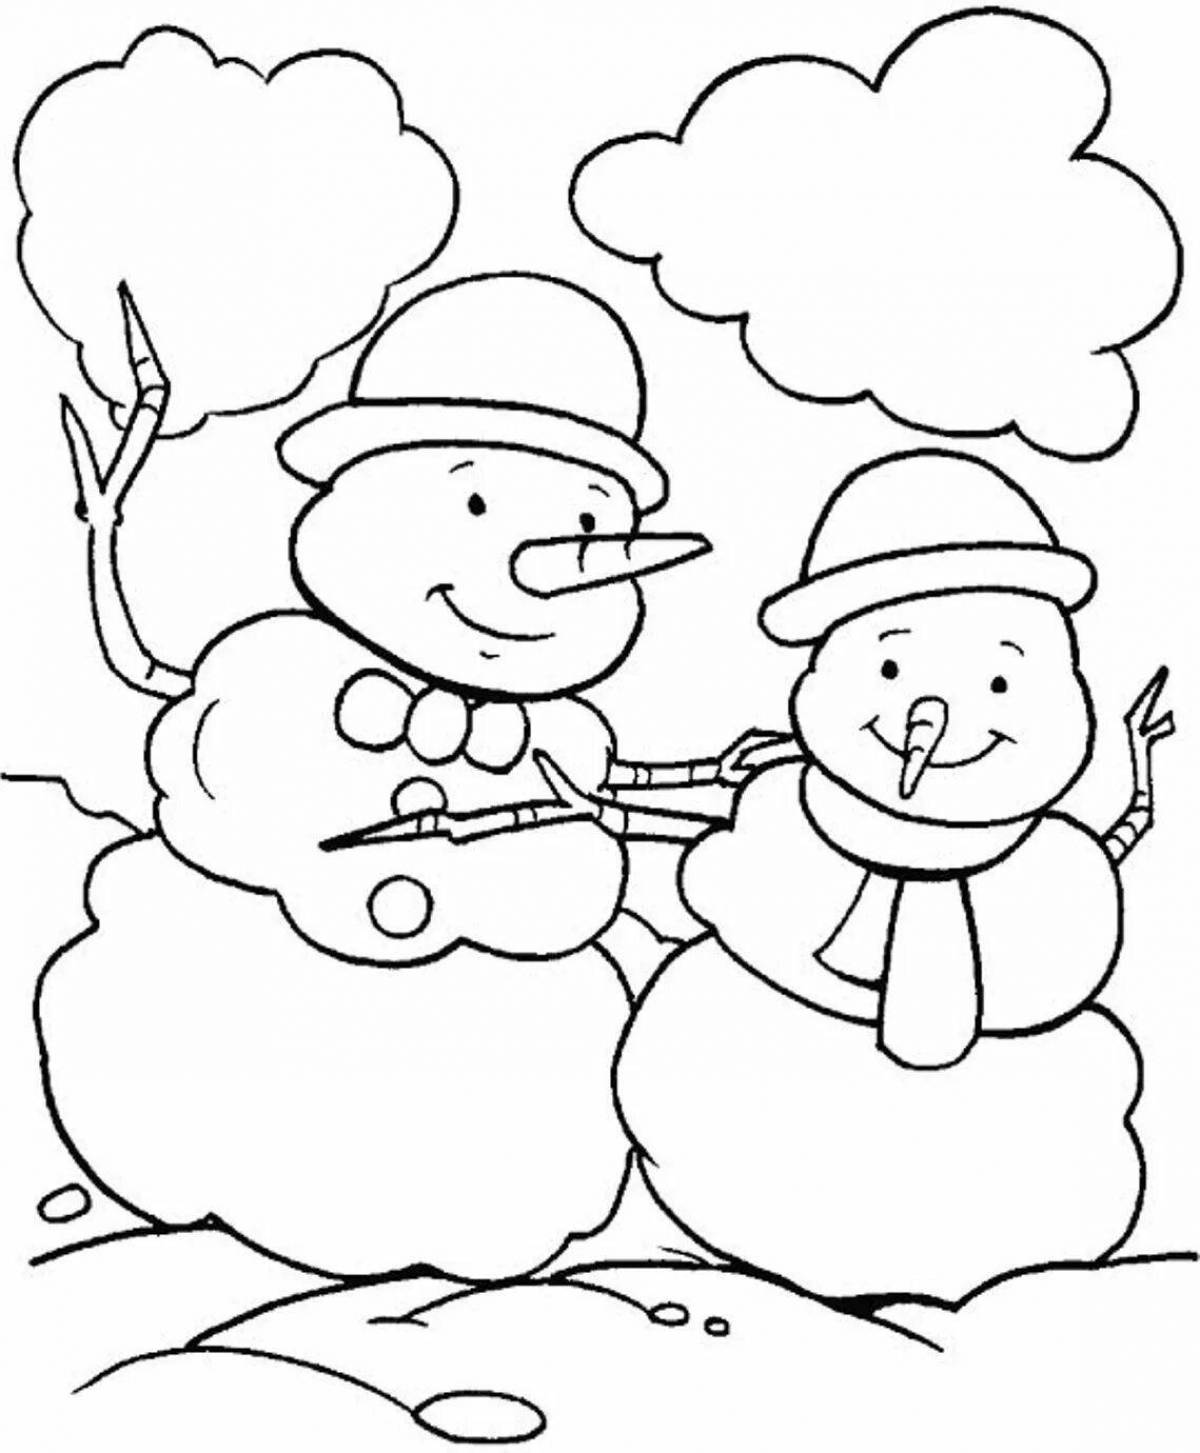 Coloring page winter snow cap